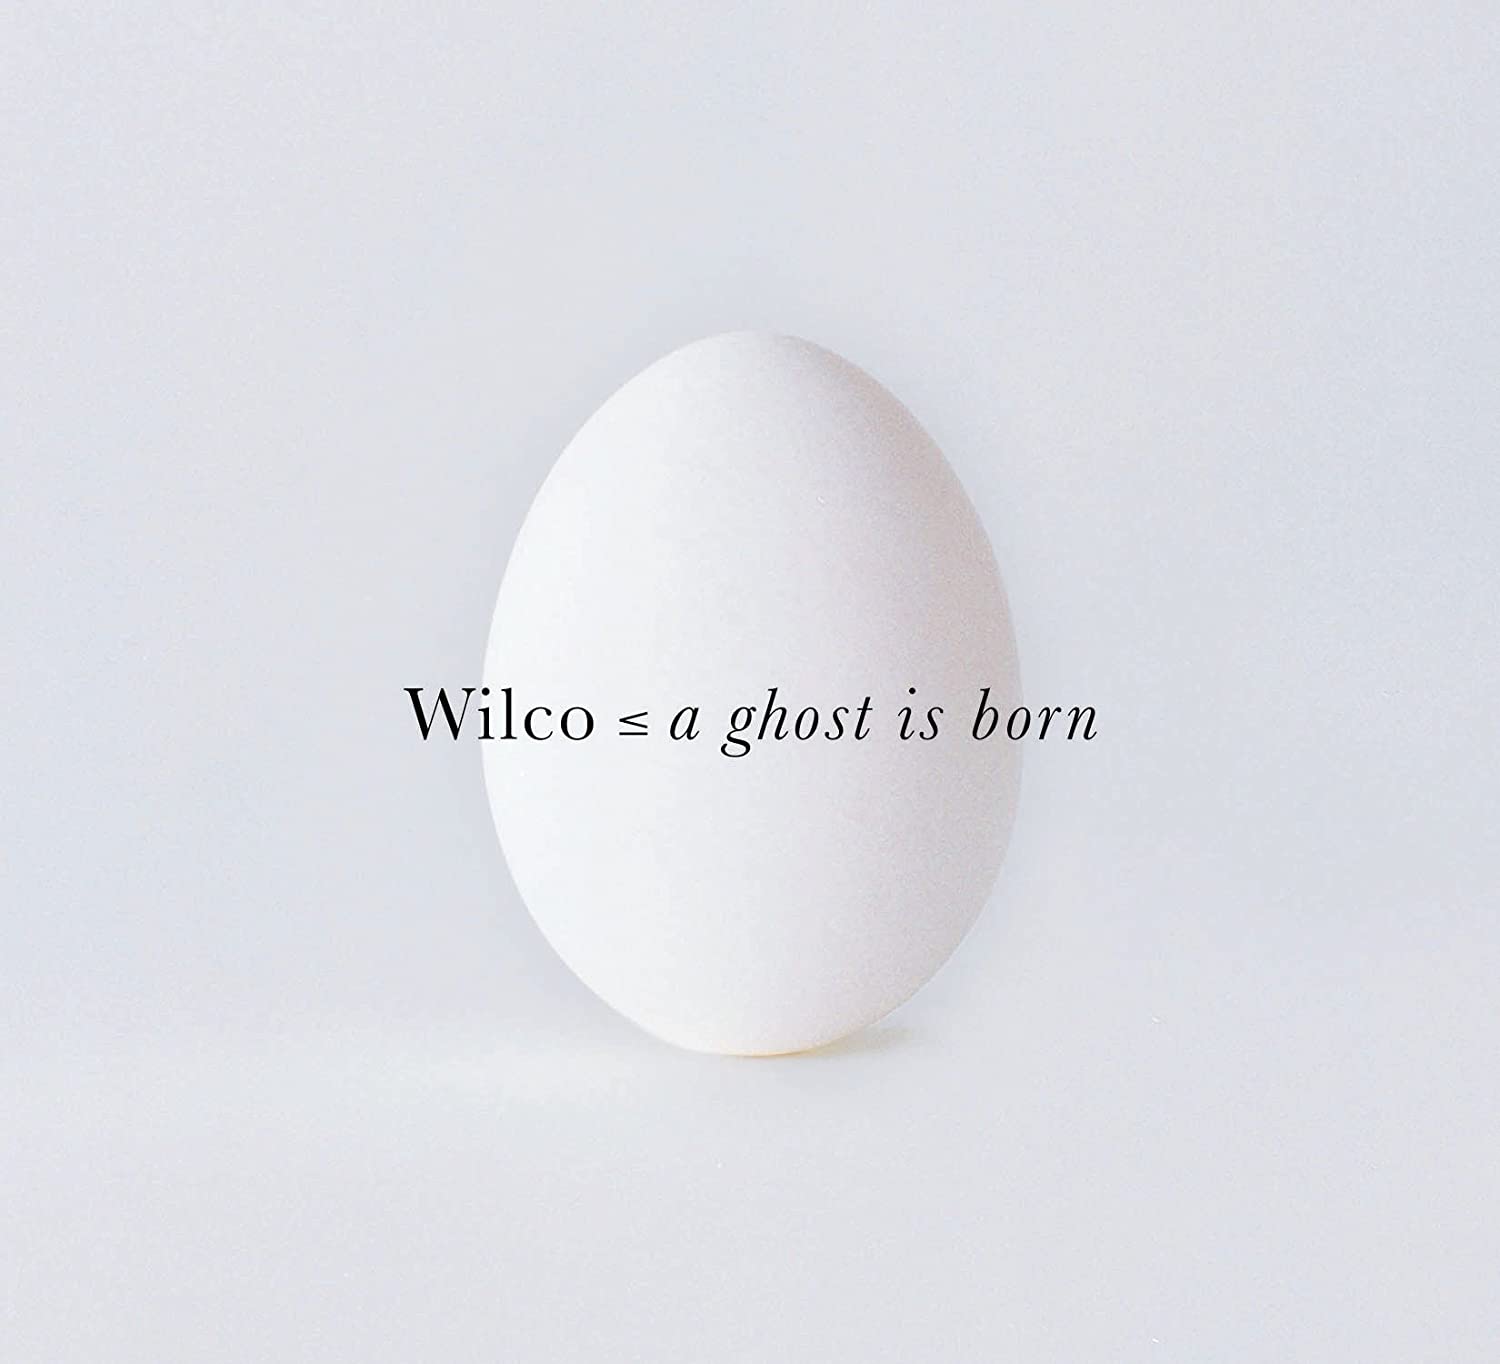 Capa de A Ghost is Born, do Wilco